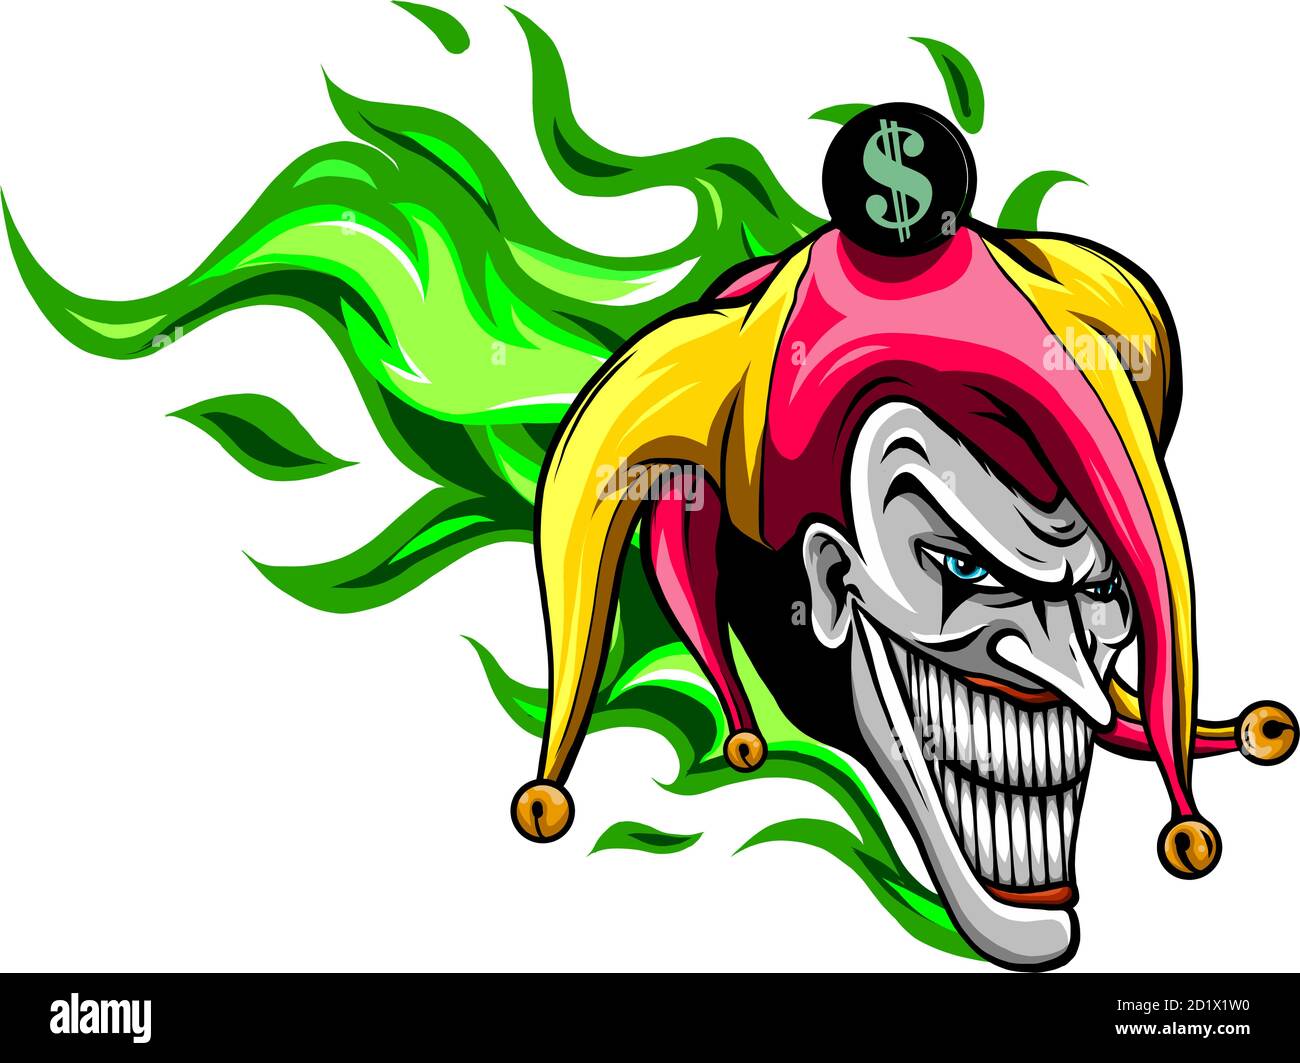 Verrückte gruselige Joker Gesicht. Wütend Clown mit bösen Lächeln auf dem Gesicht. ICH Stock Vektor